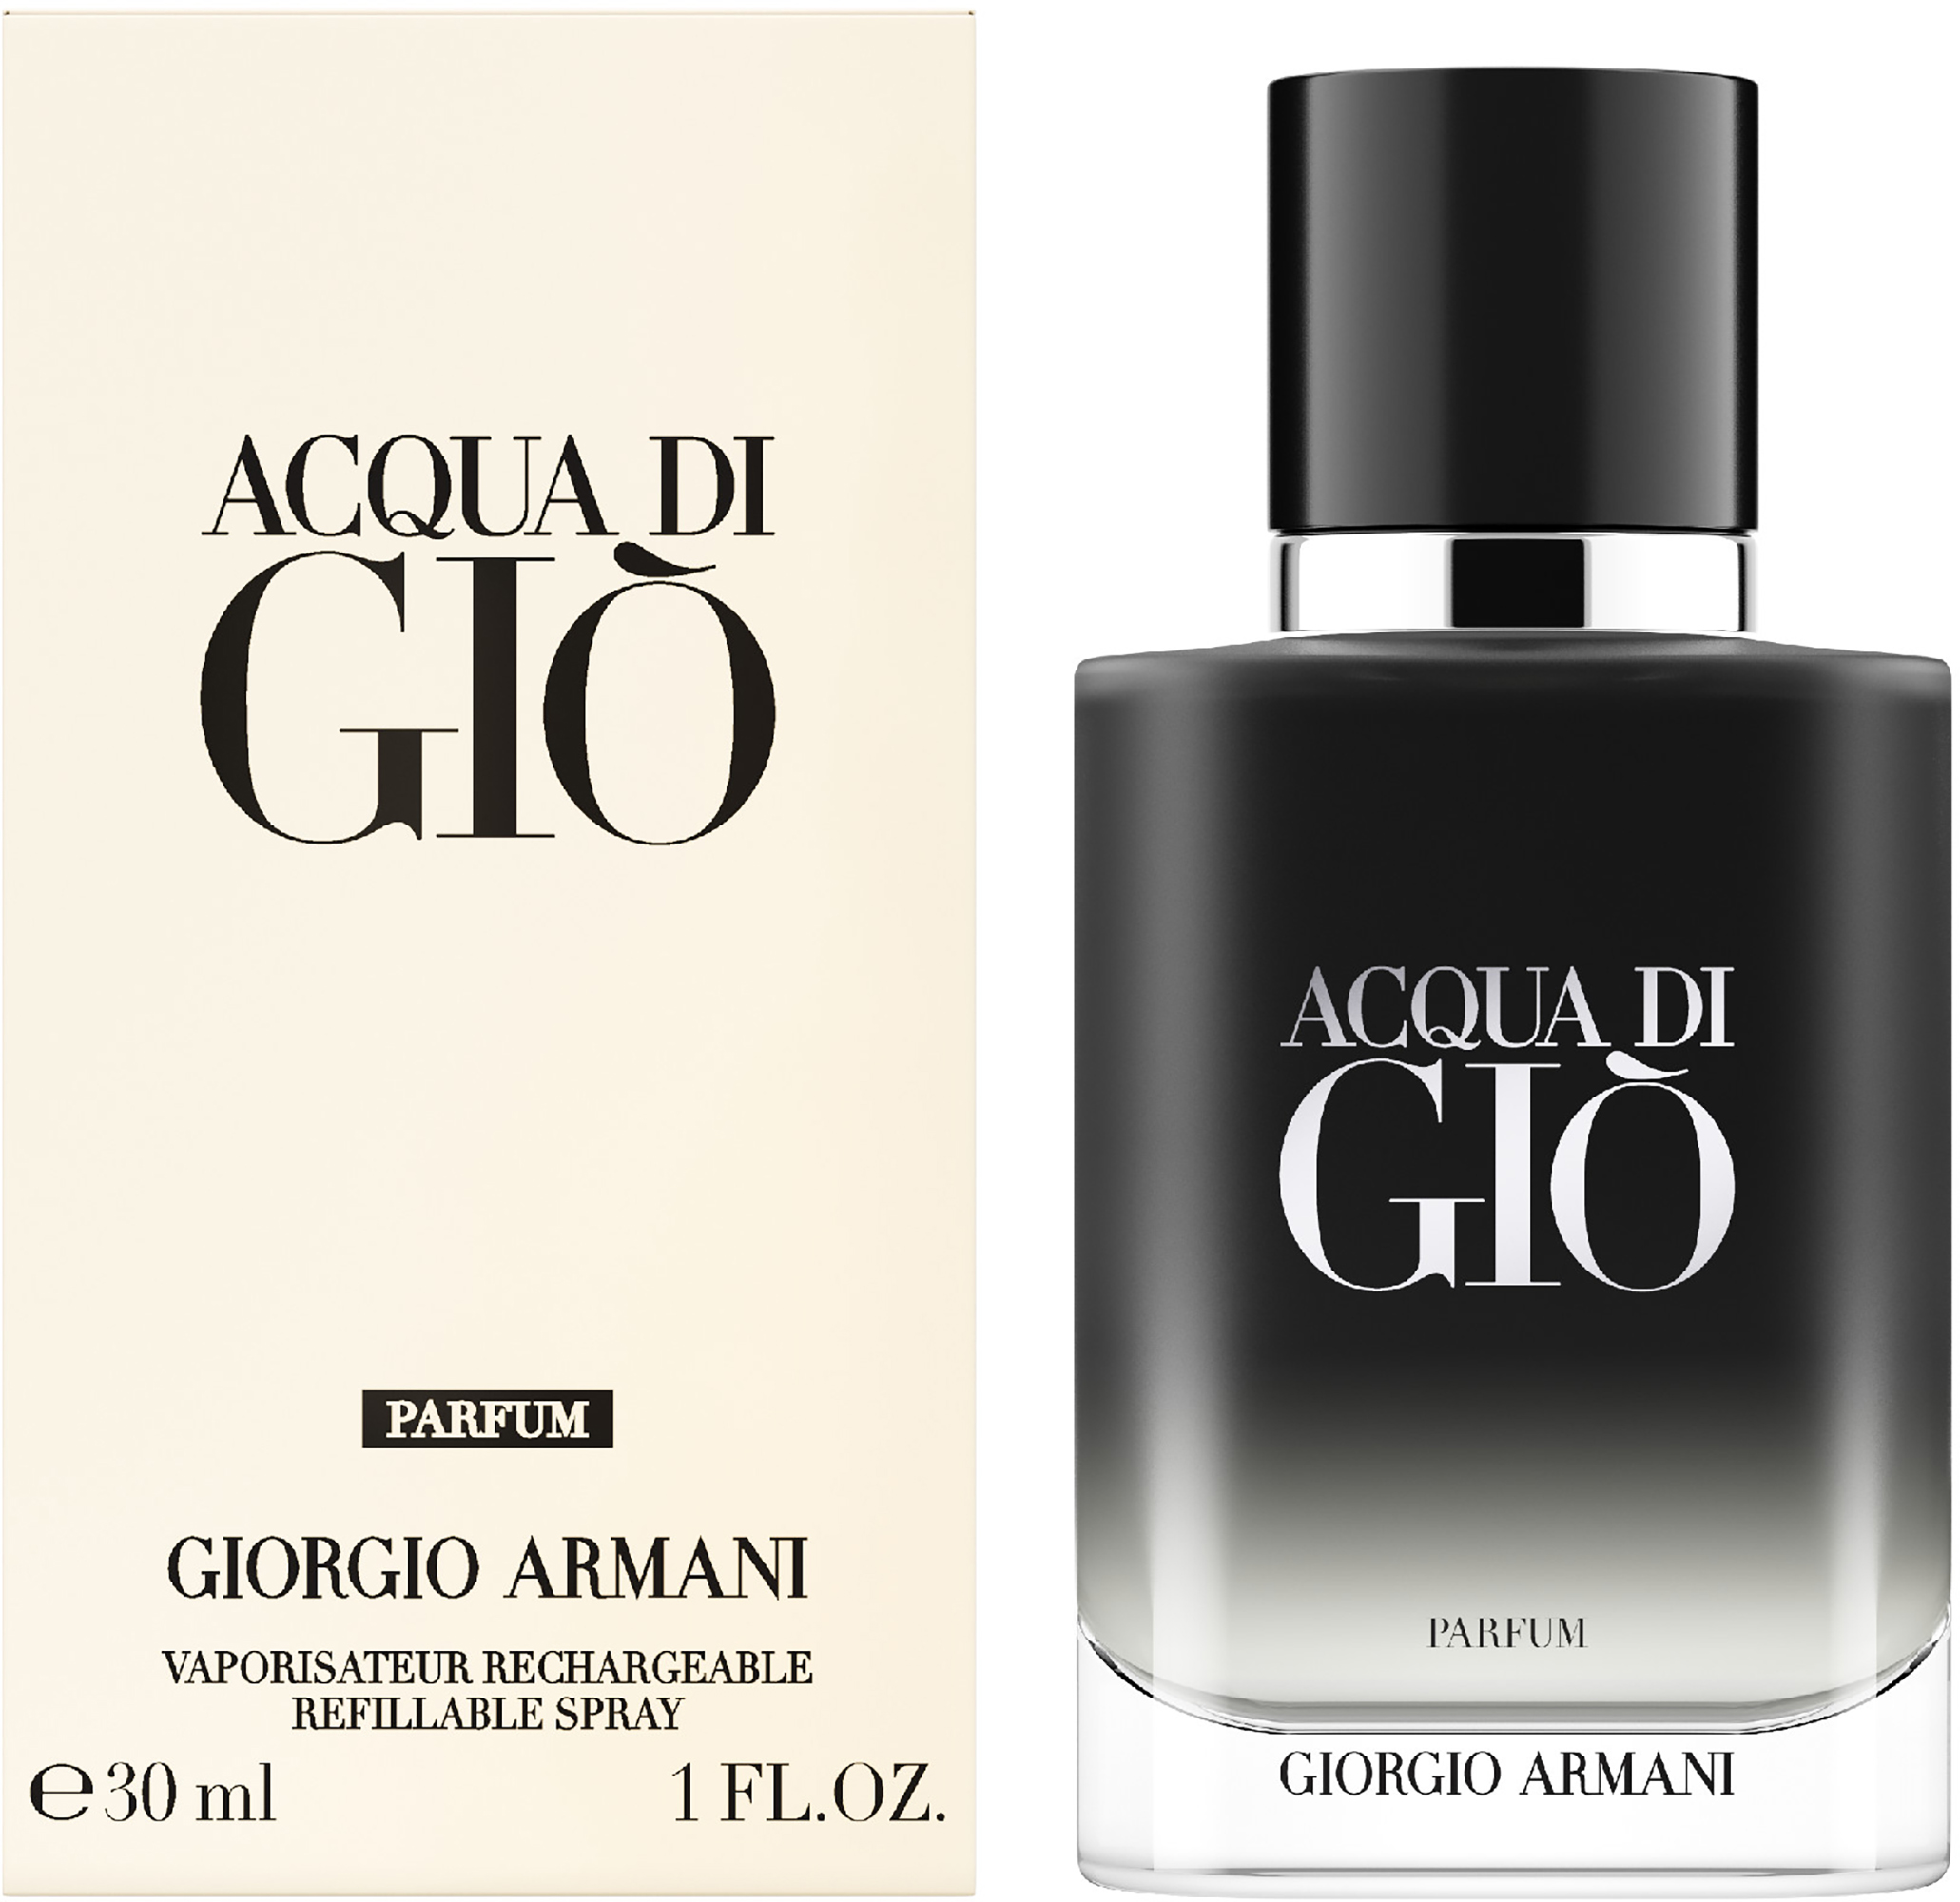 Giorgio Armani Acqua di Giò Parfum 30 ml | lyko.com